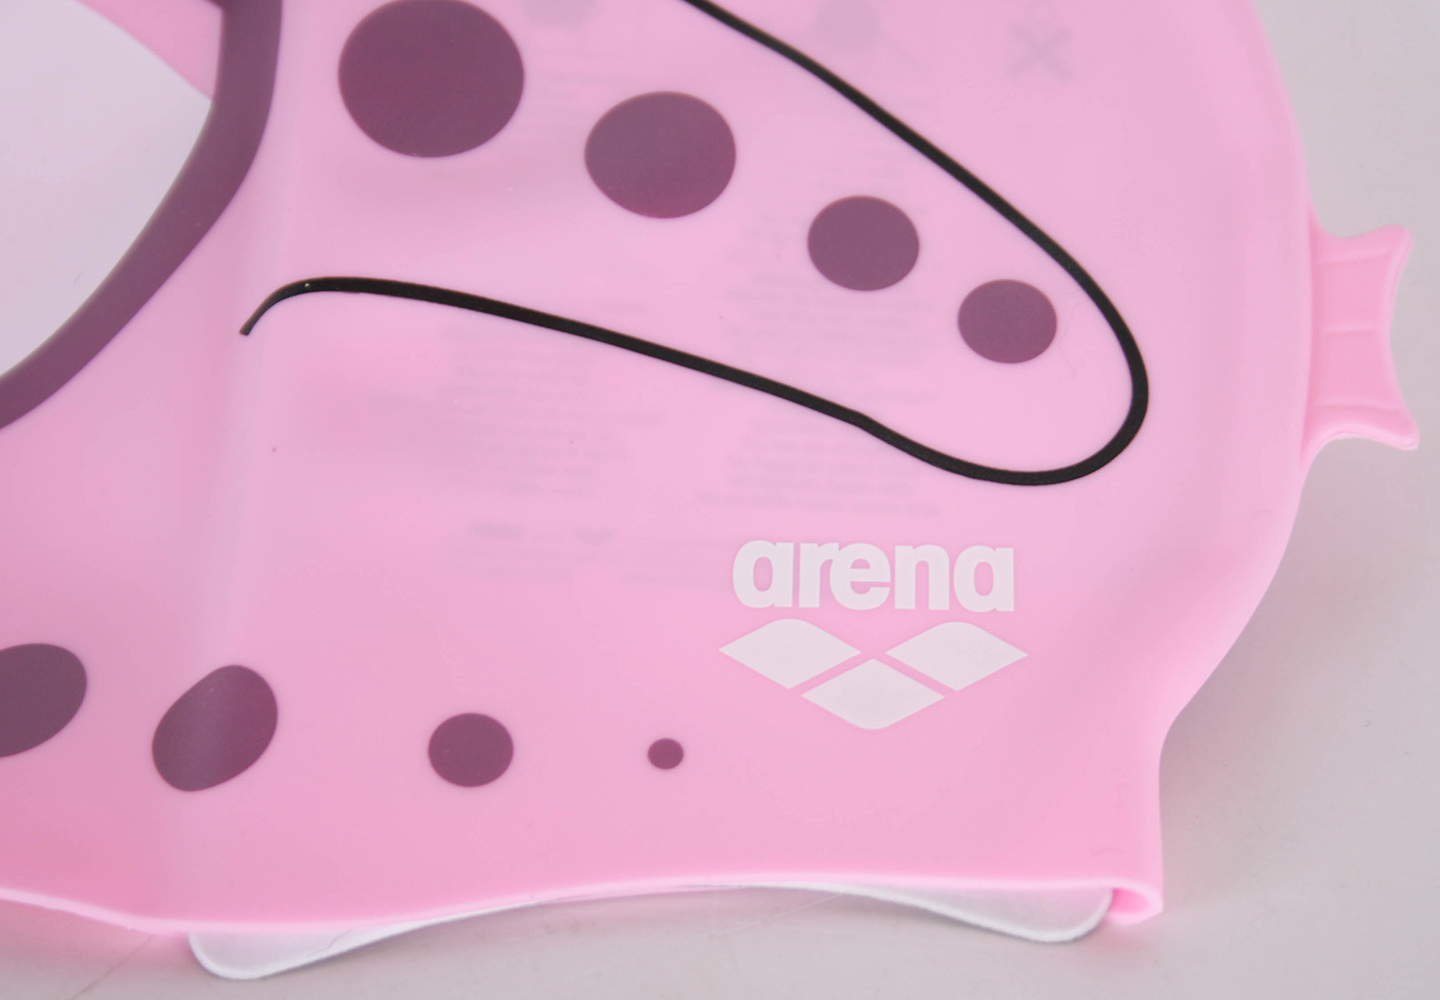 Arena Mädchen Badekappe AWT Fisch-Design Farbe Pink Onesize Badehaube